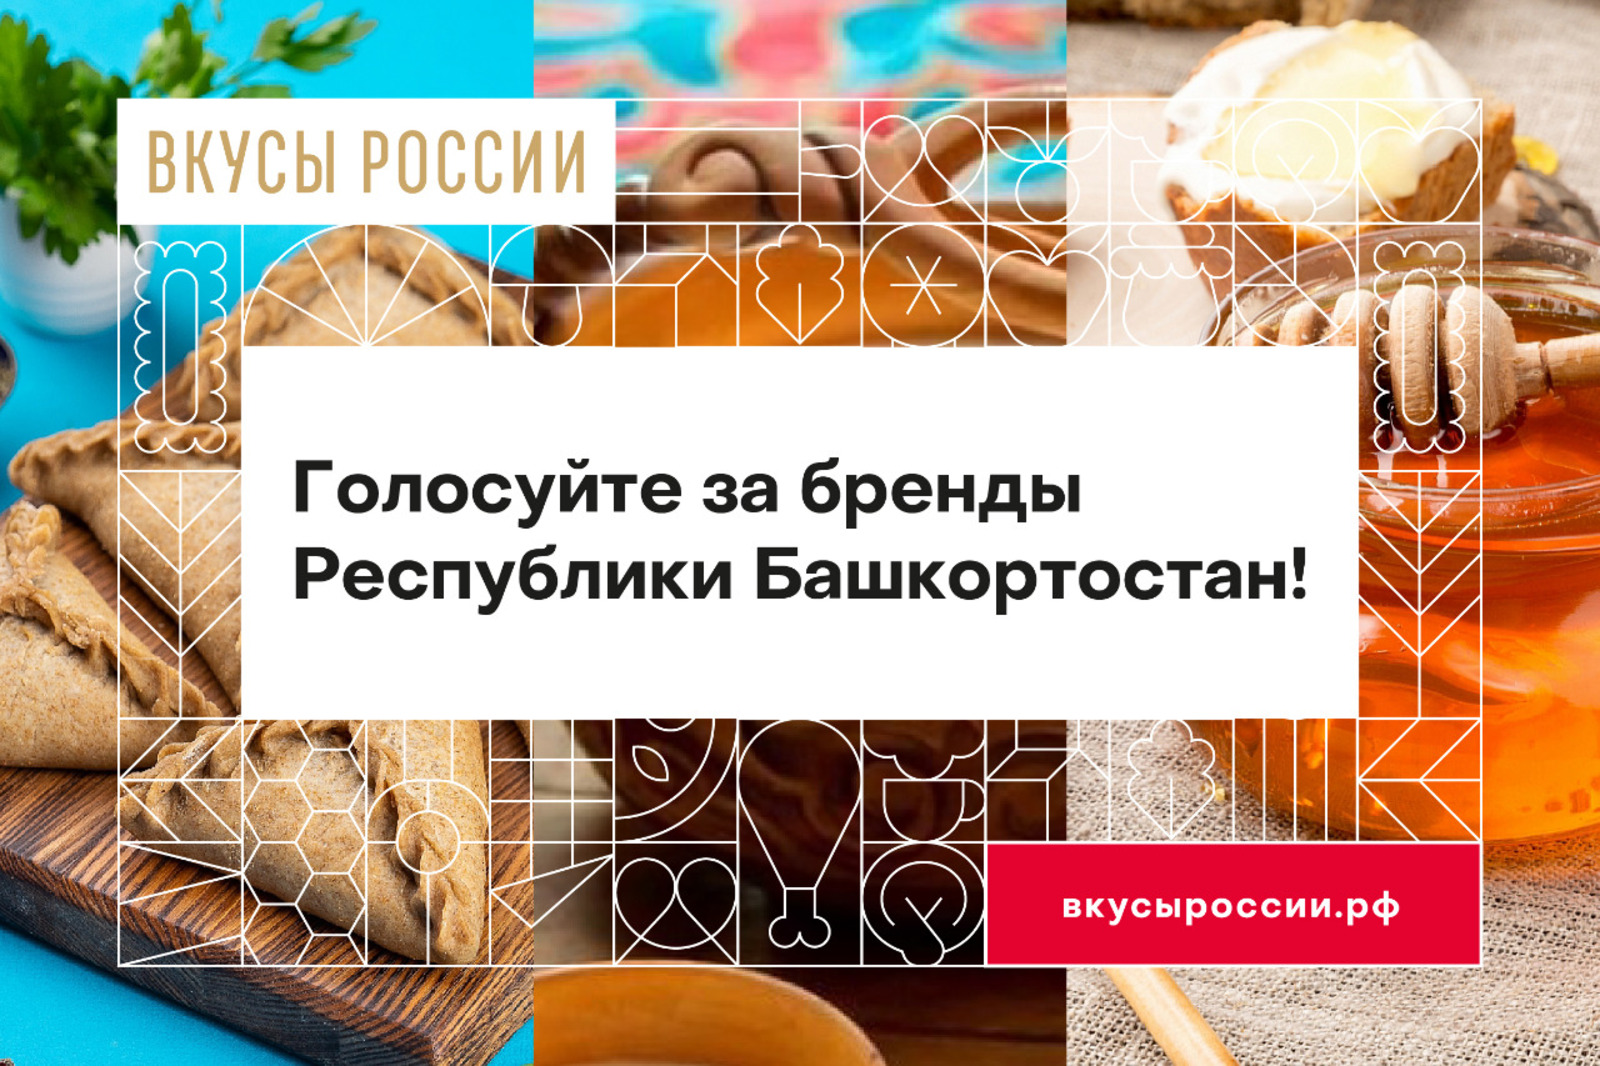 Башкирские бренды участвуют в конкурсе "Вкусы России"